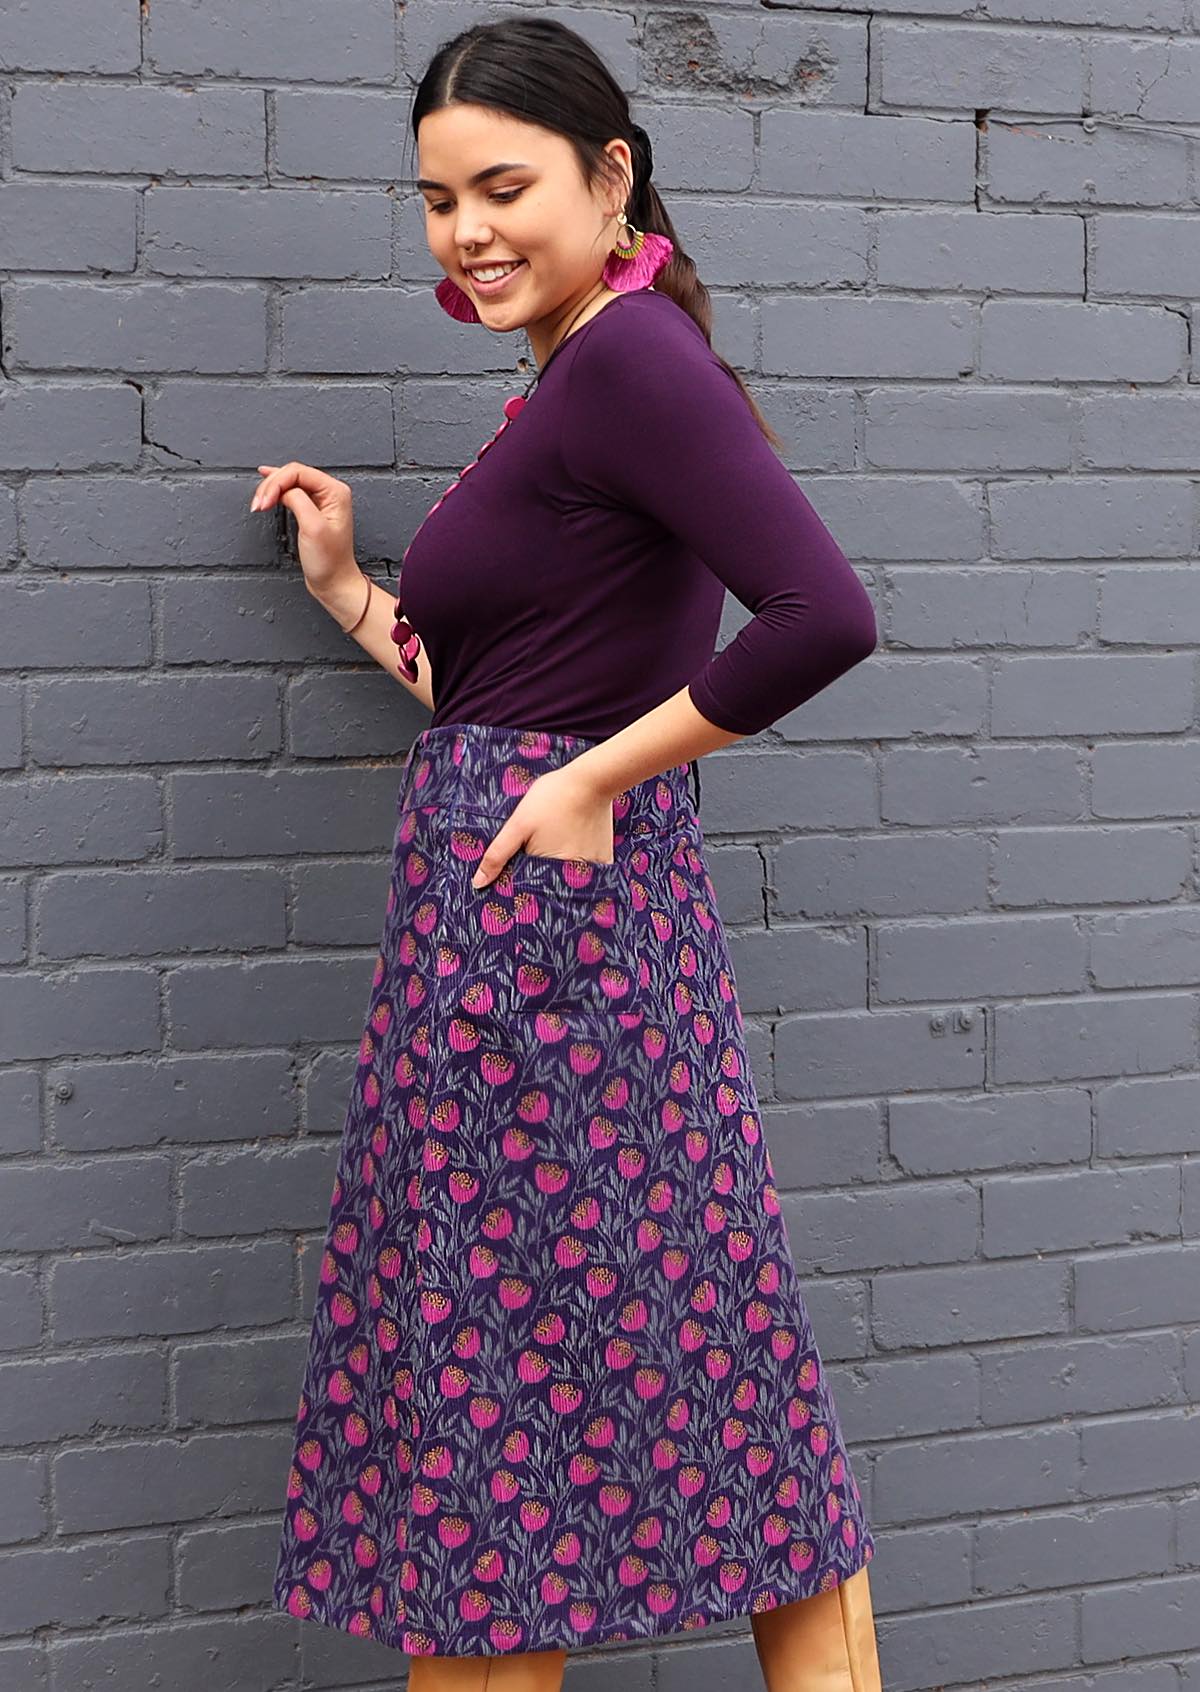 purple skirt australia